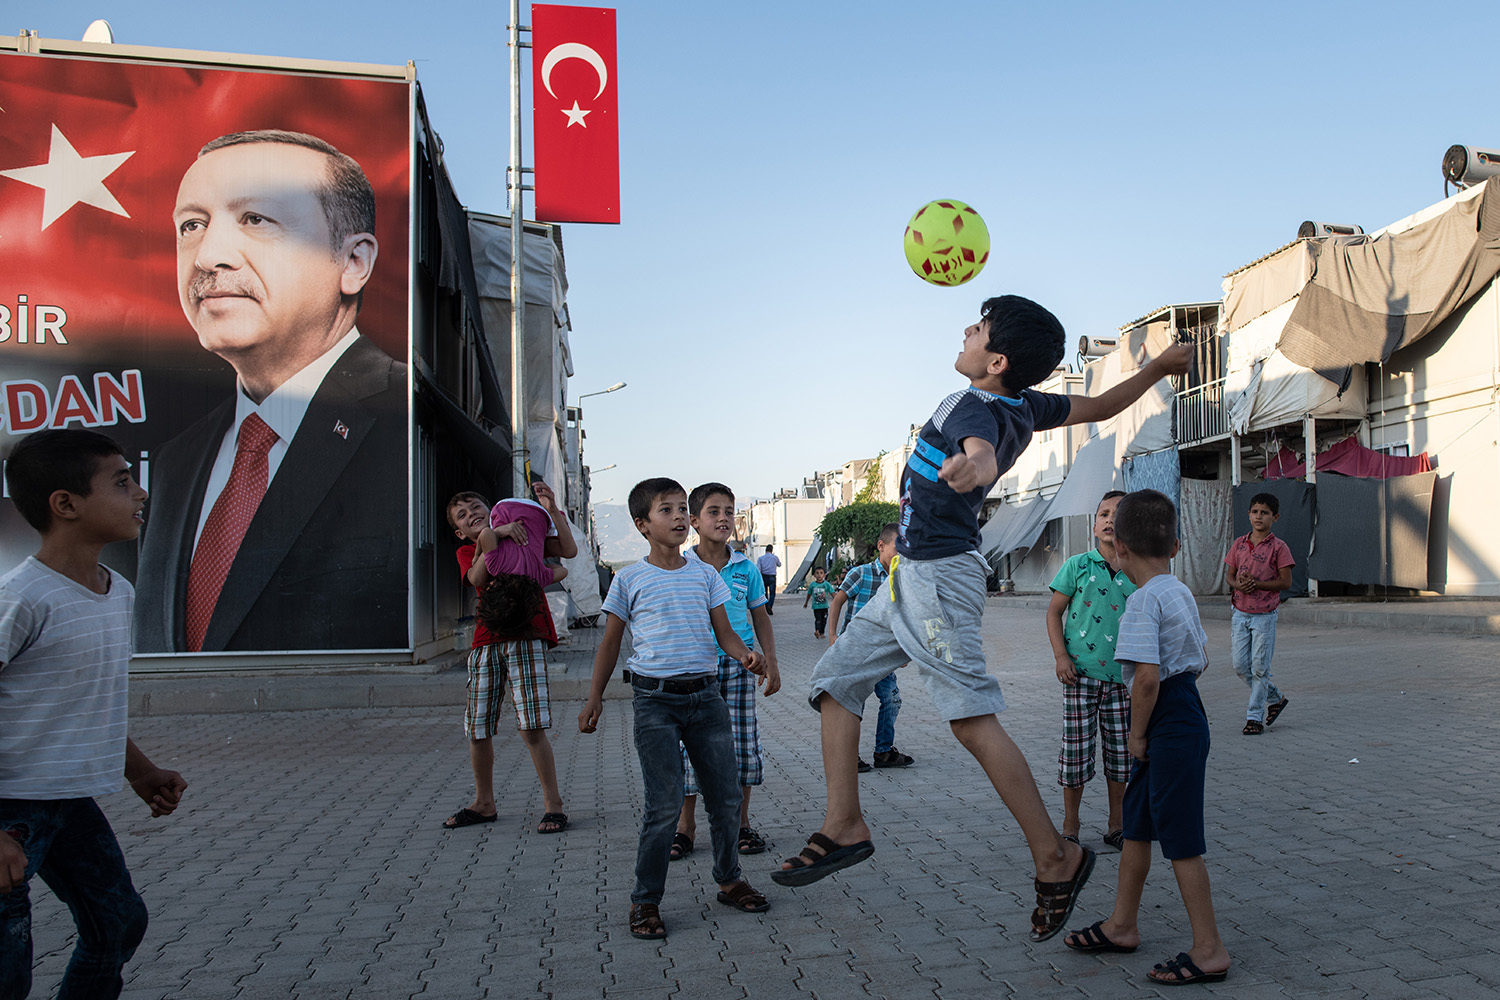 Niños refugiados sirios juegan frente a un cartel del presidente turco Erdogan